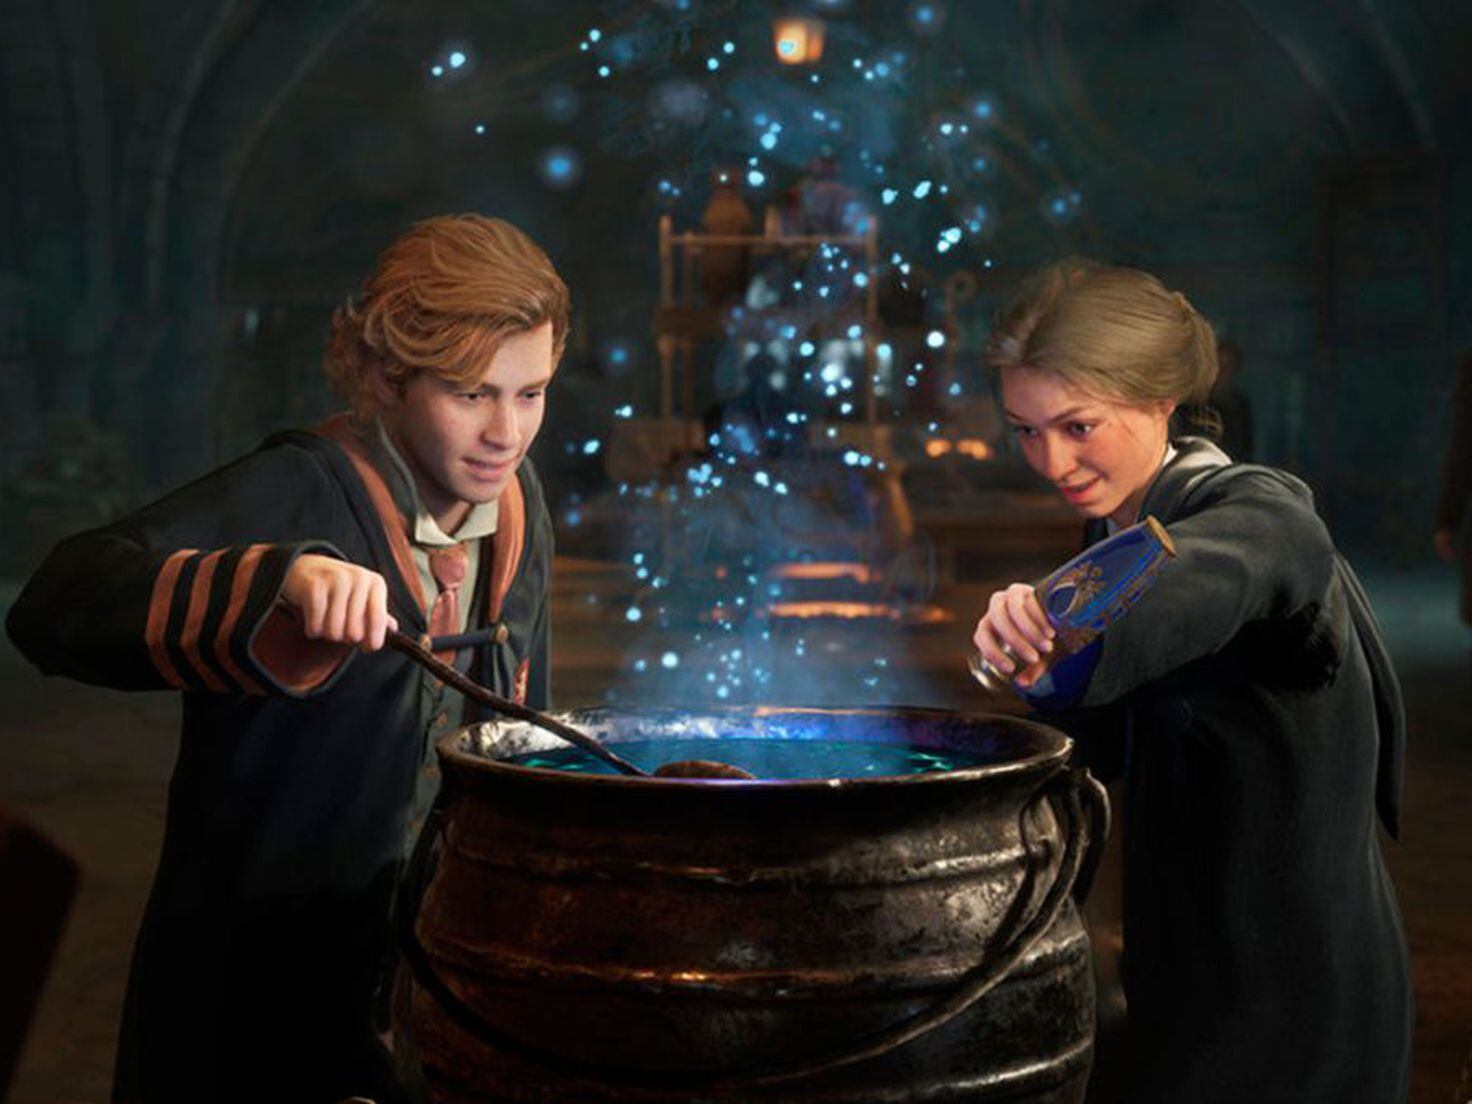 Hogwarts Legacy promises the magic of the Harry Potter world - Meristation